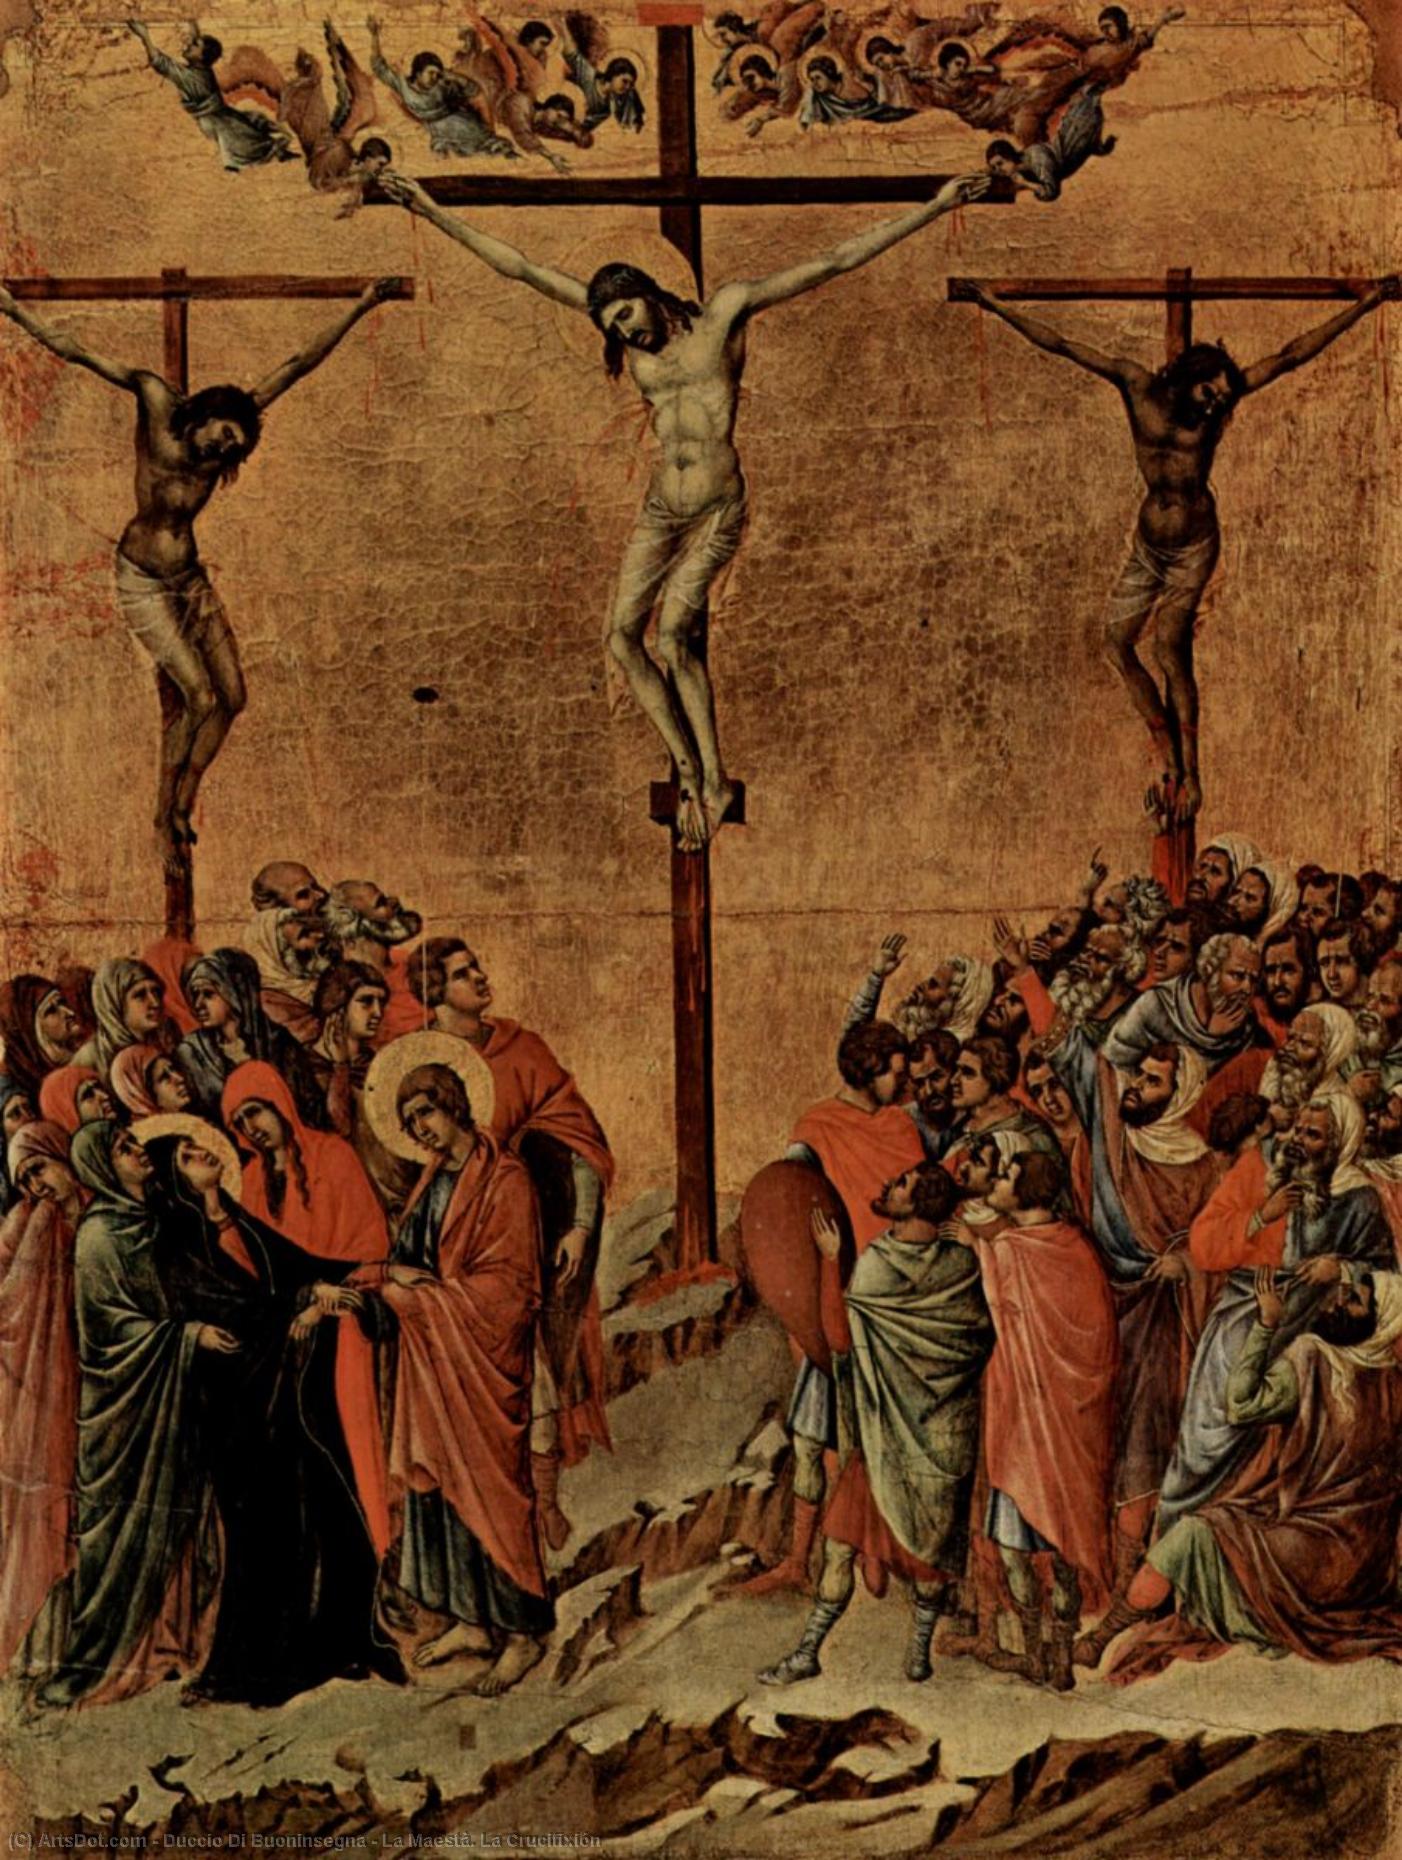 WikiOO.org - Encyclopedia of Fine Arts - Malba, Artwork Duccio Di Buoninsegna - La Maestà. La Crucifixión